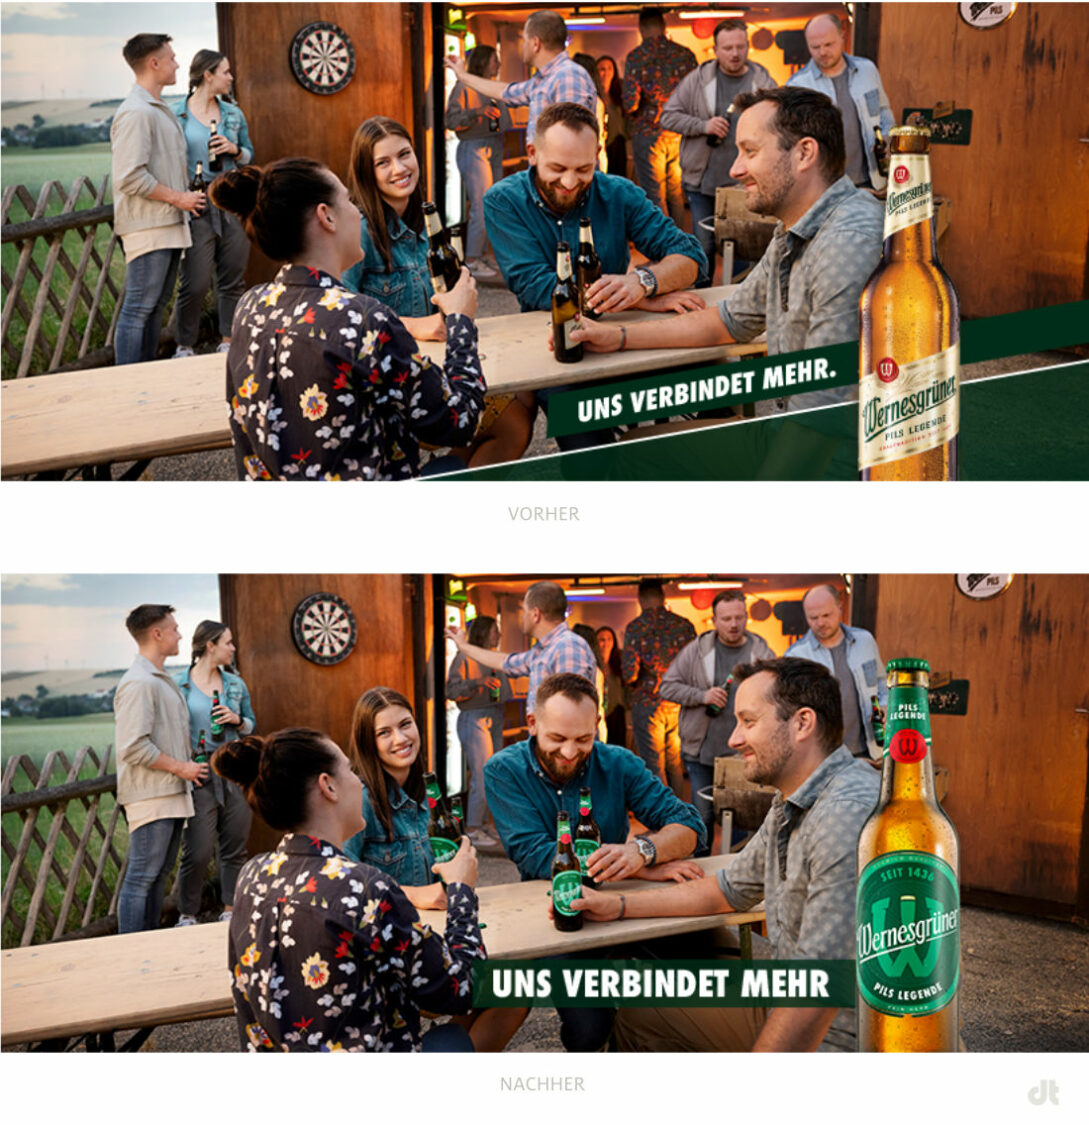 Wernesgrüner Kampagnenmotiv – vorher und nachher, Bildquelle: Carlsberg, Bildmontage: dt